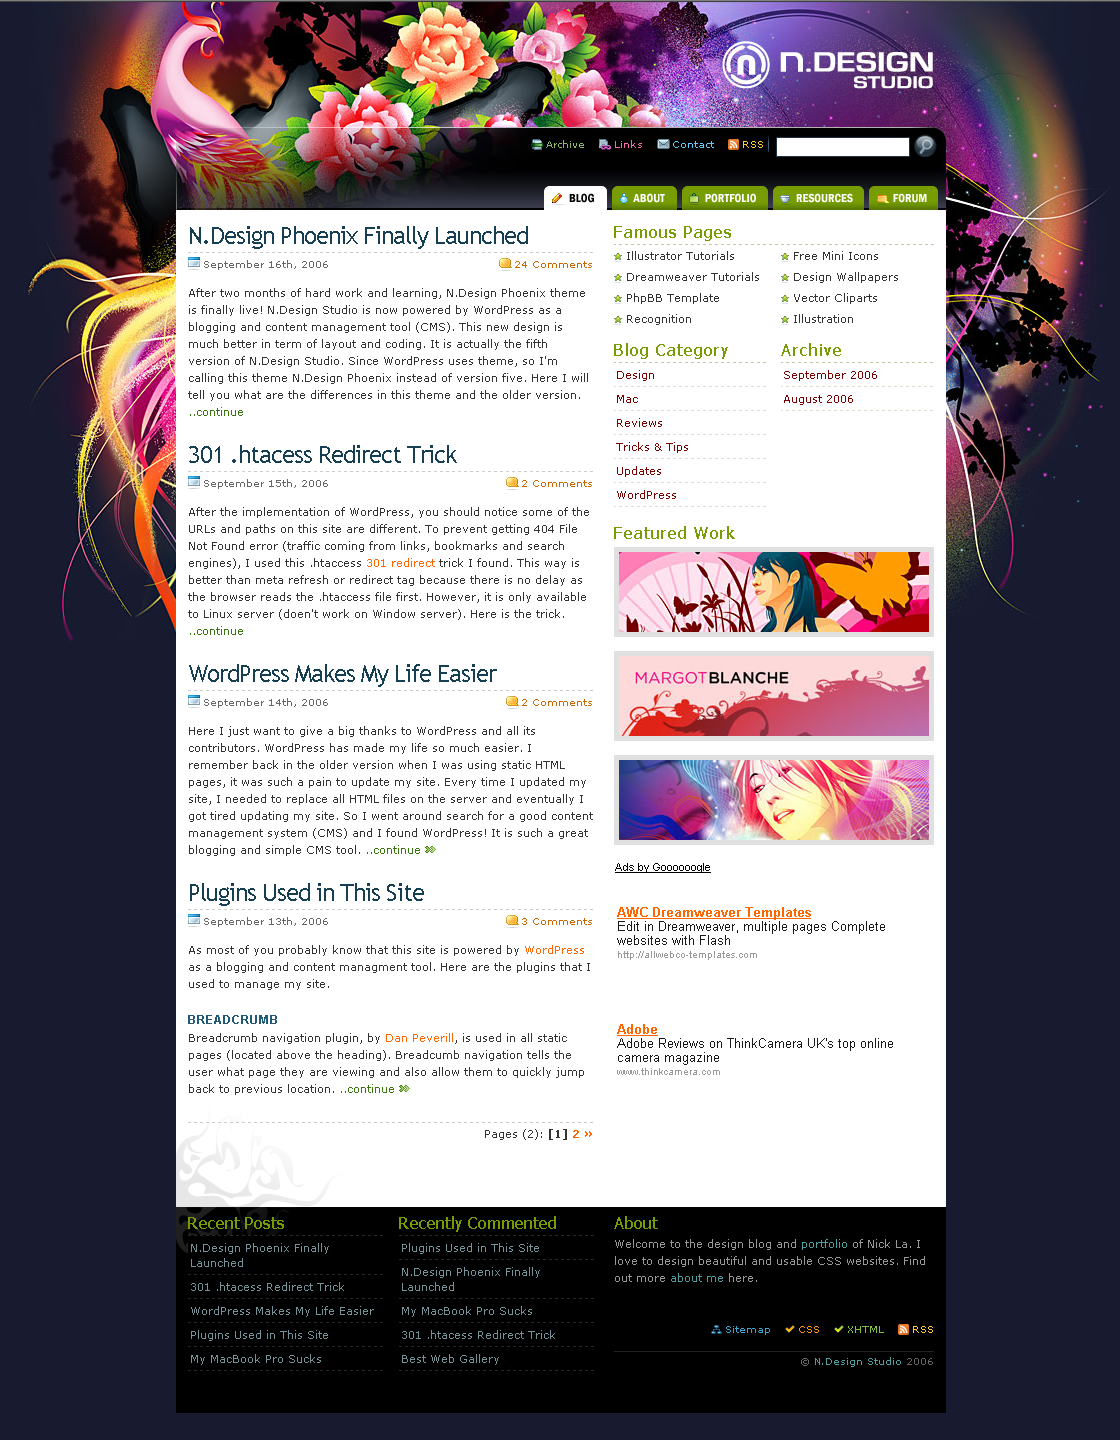 N.Design Studio website in 2006